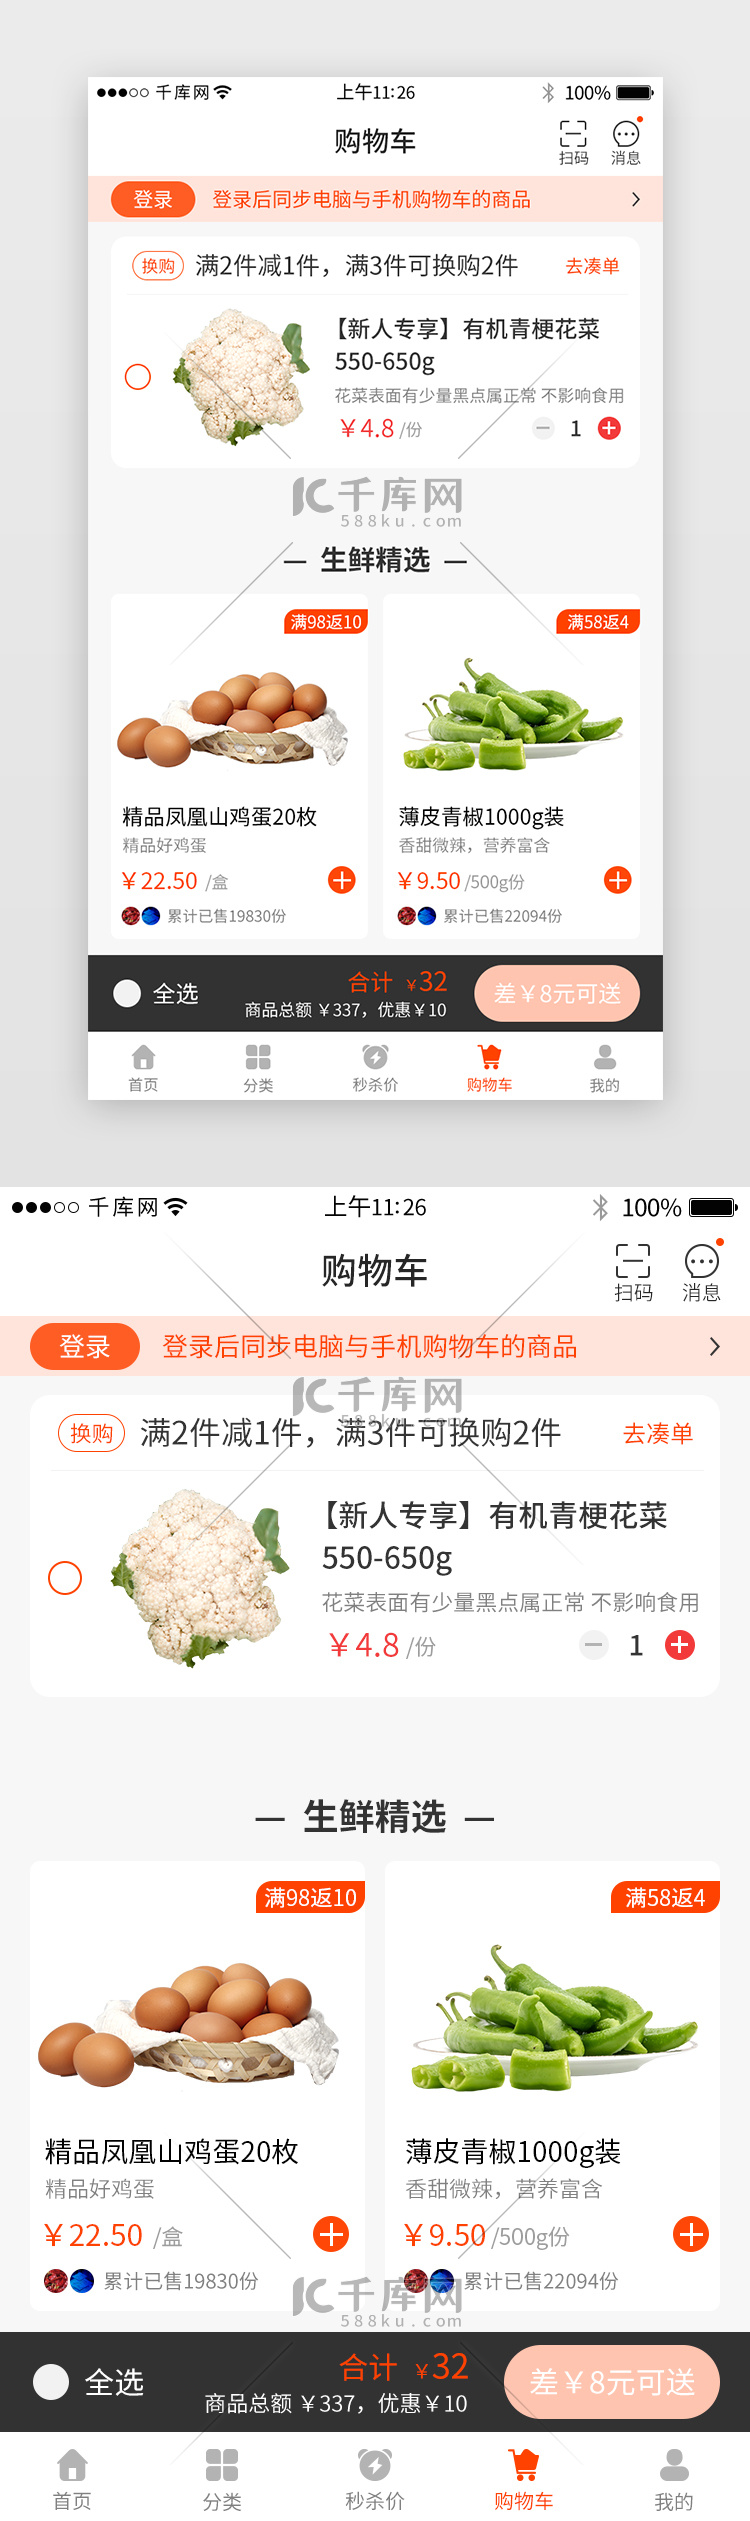 橙色系生鲜app购物车详情页